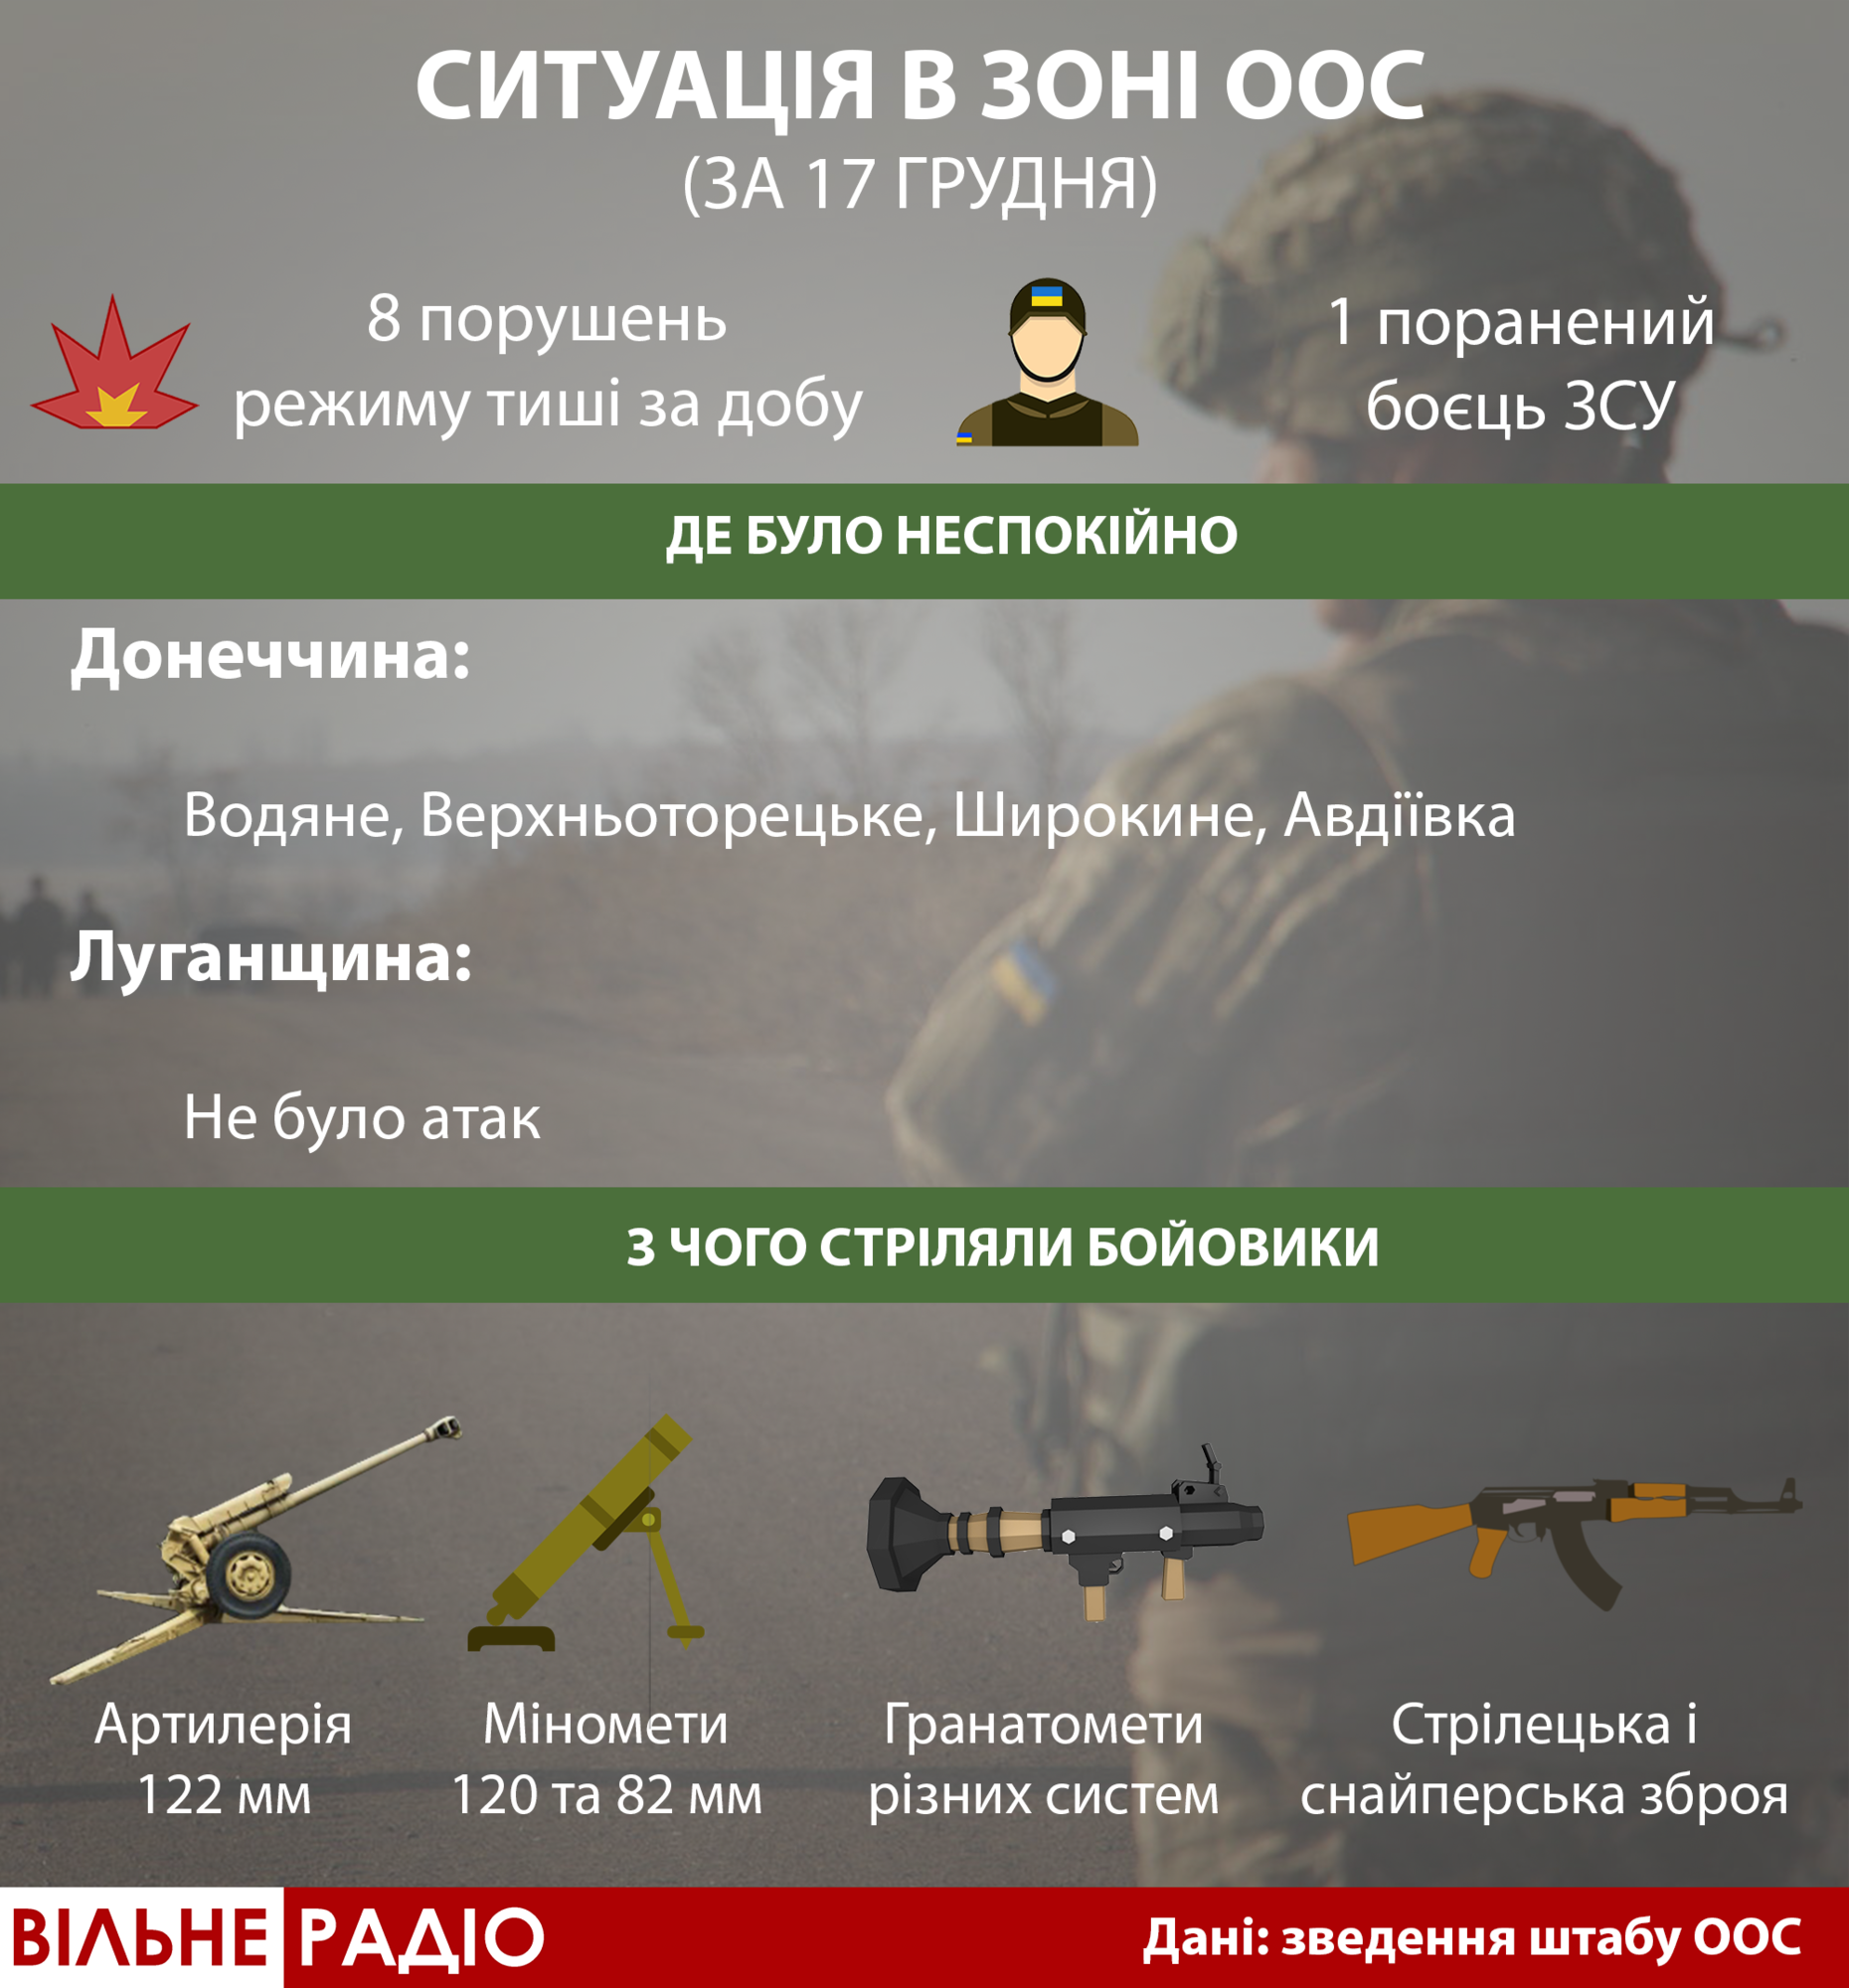 17 грудня бойовики поранили українського військовослужбовця. ЗСУ дали відповідь, — штаб ООС (Інфографіка)